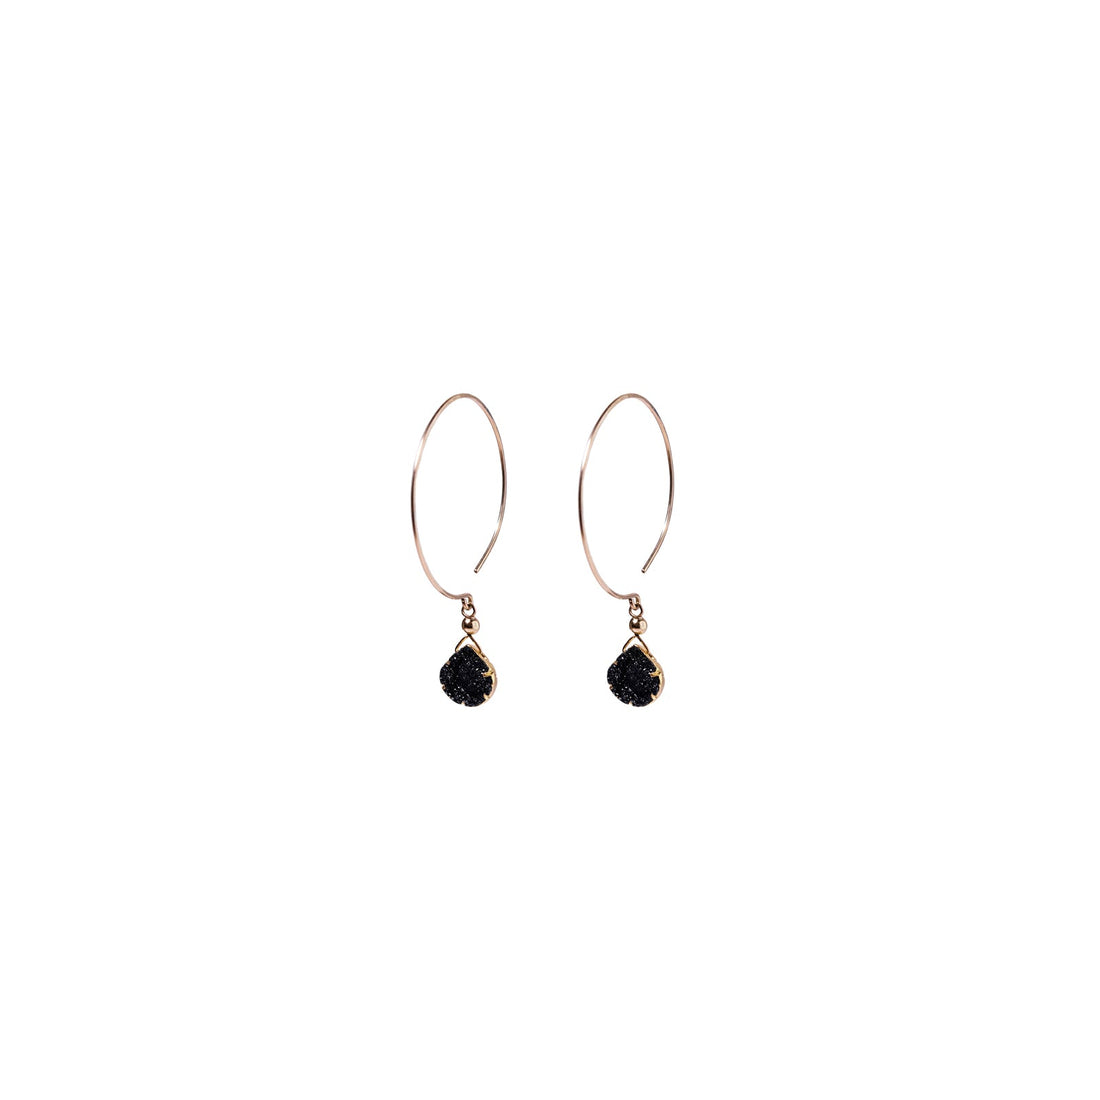 Kelly Earrings, Black Druzy Pear with contoured Gold Bezel Earrings Sayulita Sol 